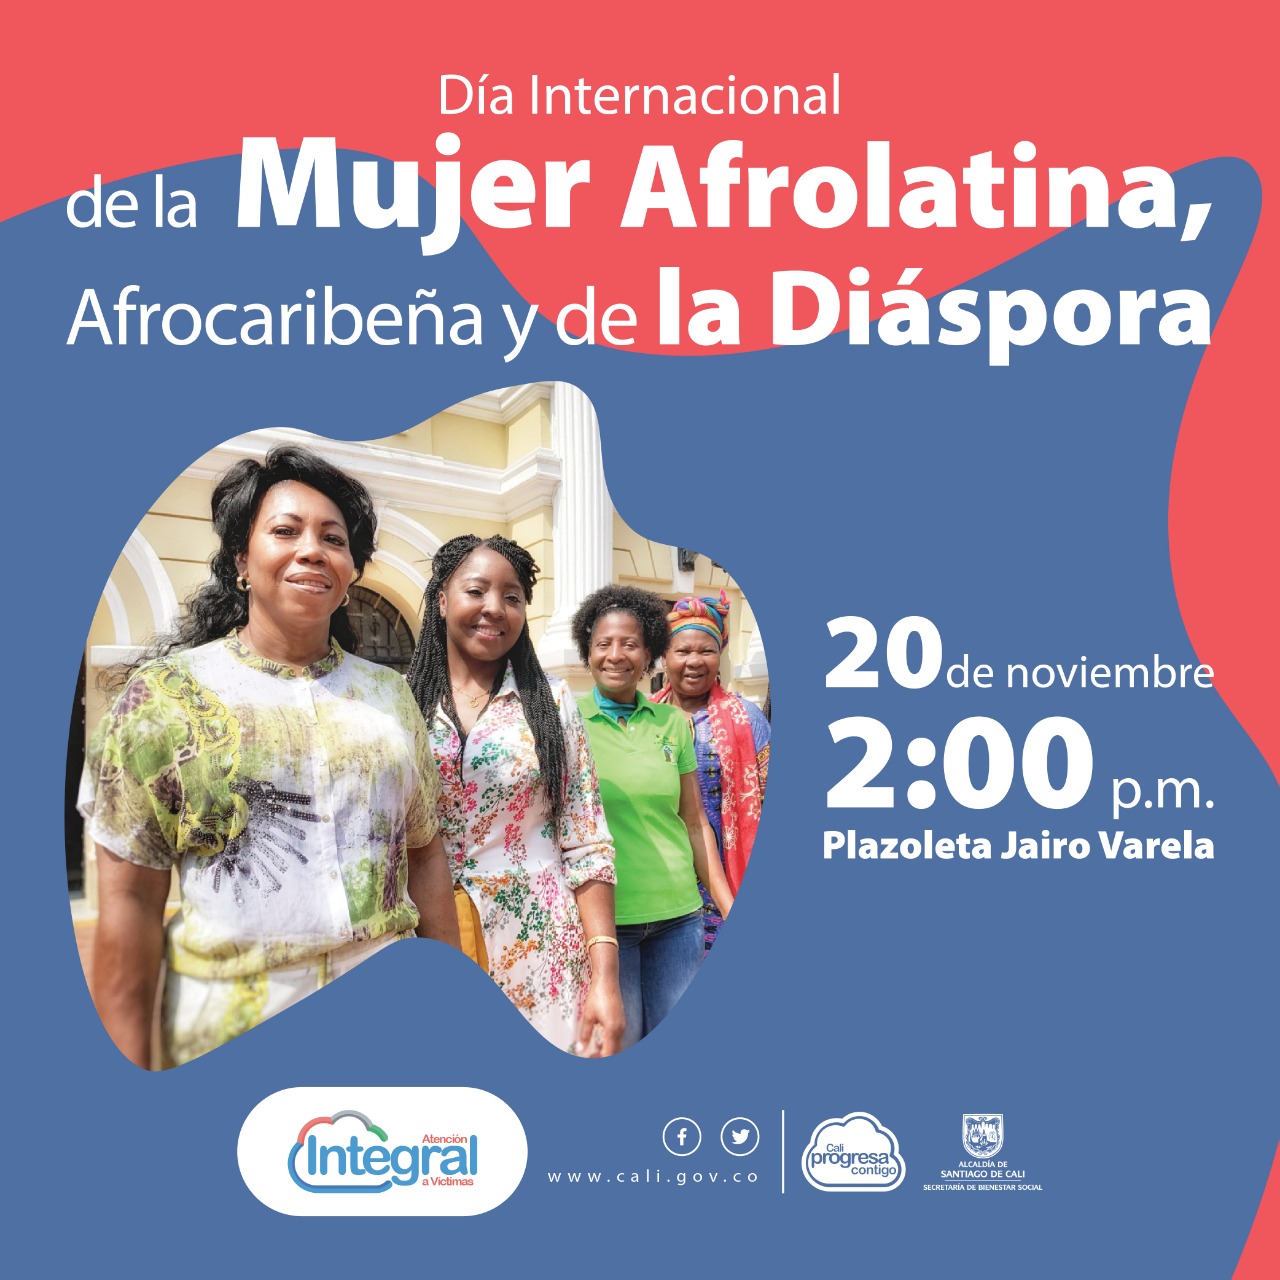 Este 20 de noviembre Cali conmemorará el día la Mujer Afrolatina, Afrocaribeña y de la Diáspora víctima del conflicto